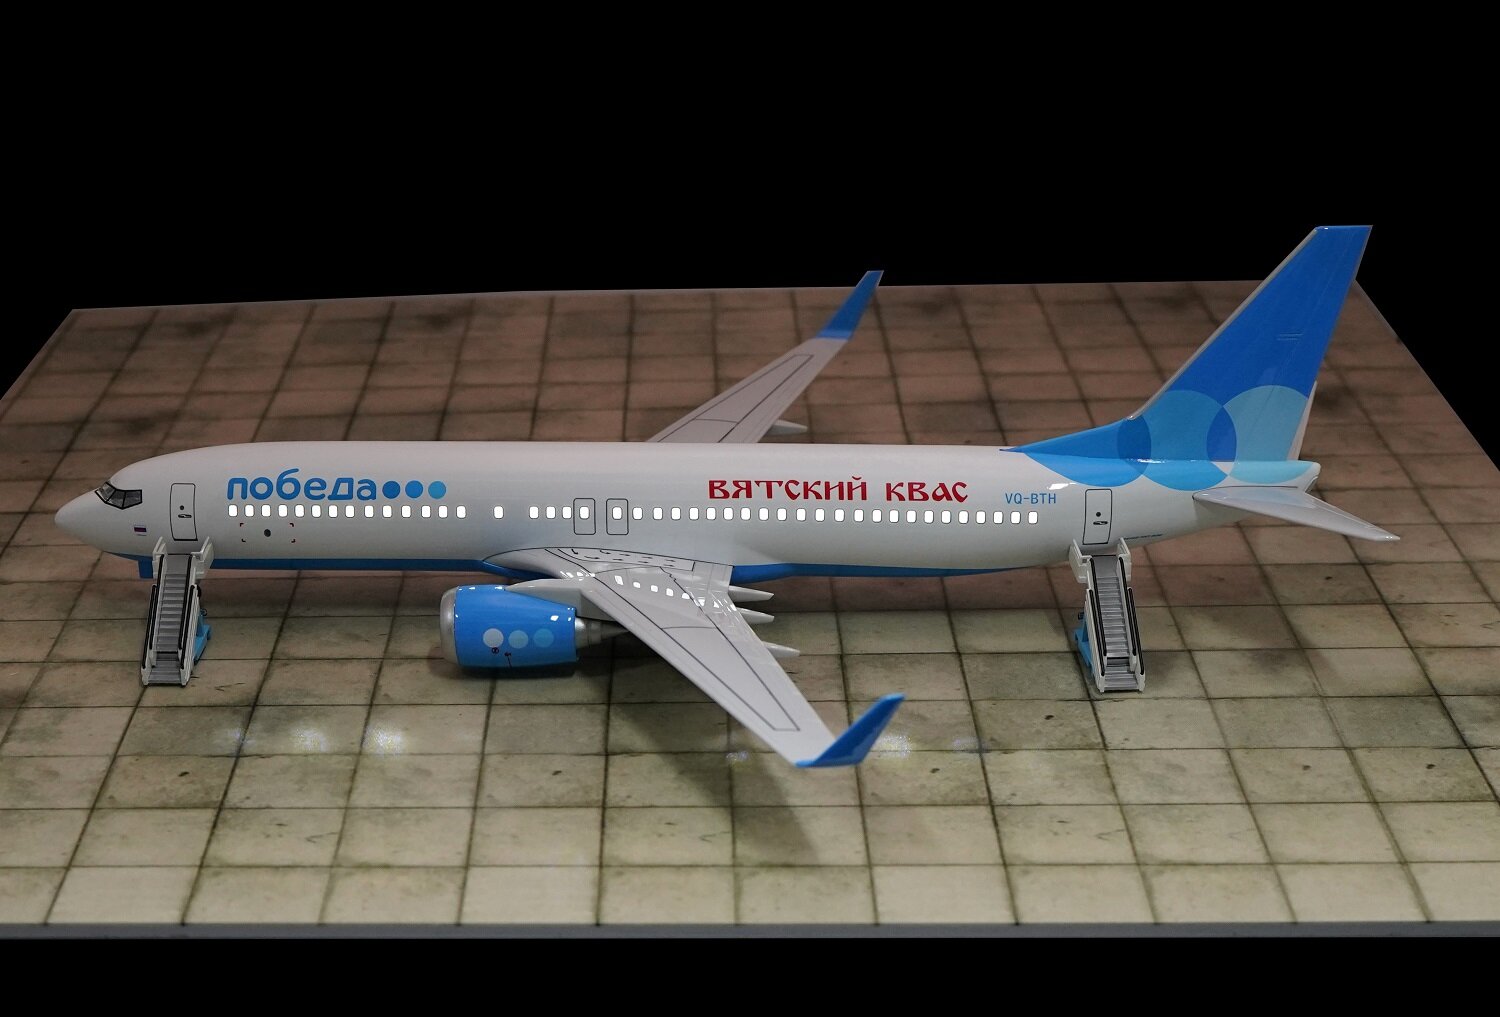 Модель самолёта Боинг 737-800 авиакомпании России Победа. С подсветкой иллюминаторов.